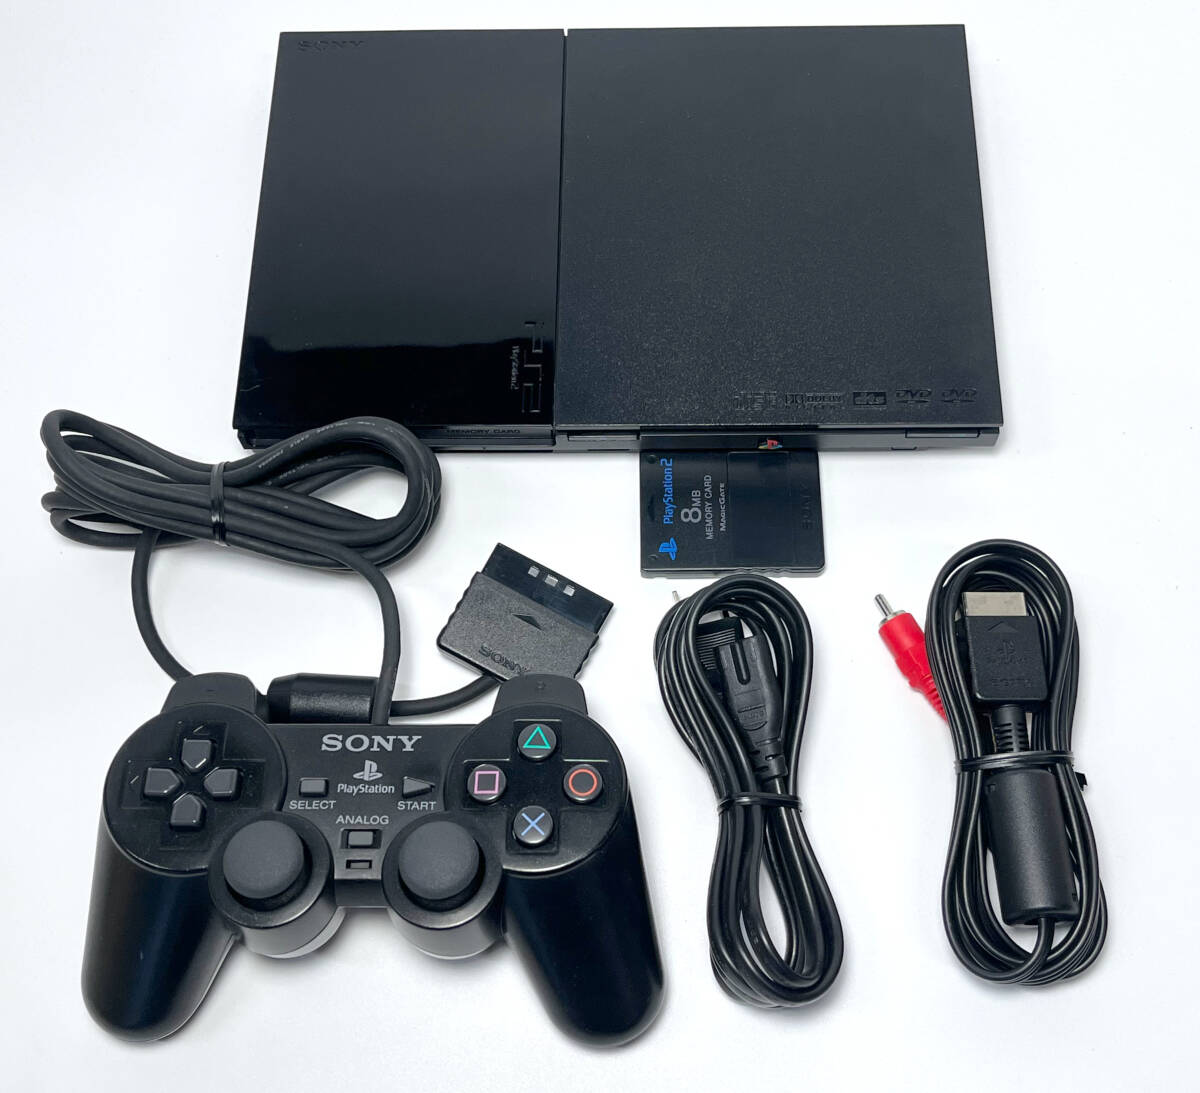 メンテナンス清掃 円周キズ対策 PS2 SCPH-90000 薄型 セット コントローラー メモリーカード 本体 PlayStation2 整備 オーバーホール_画像1